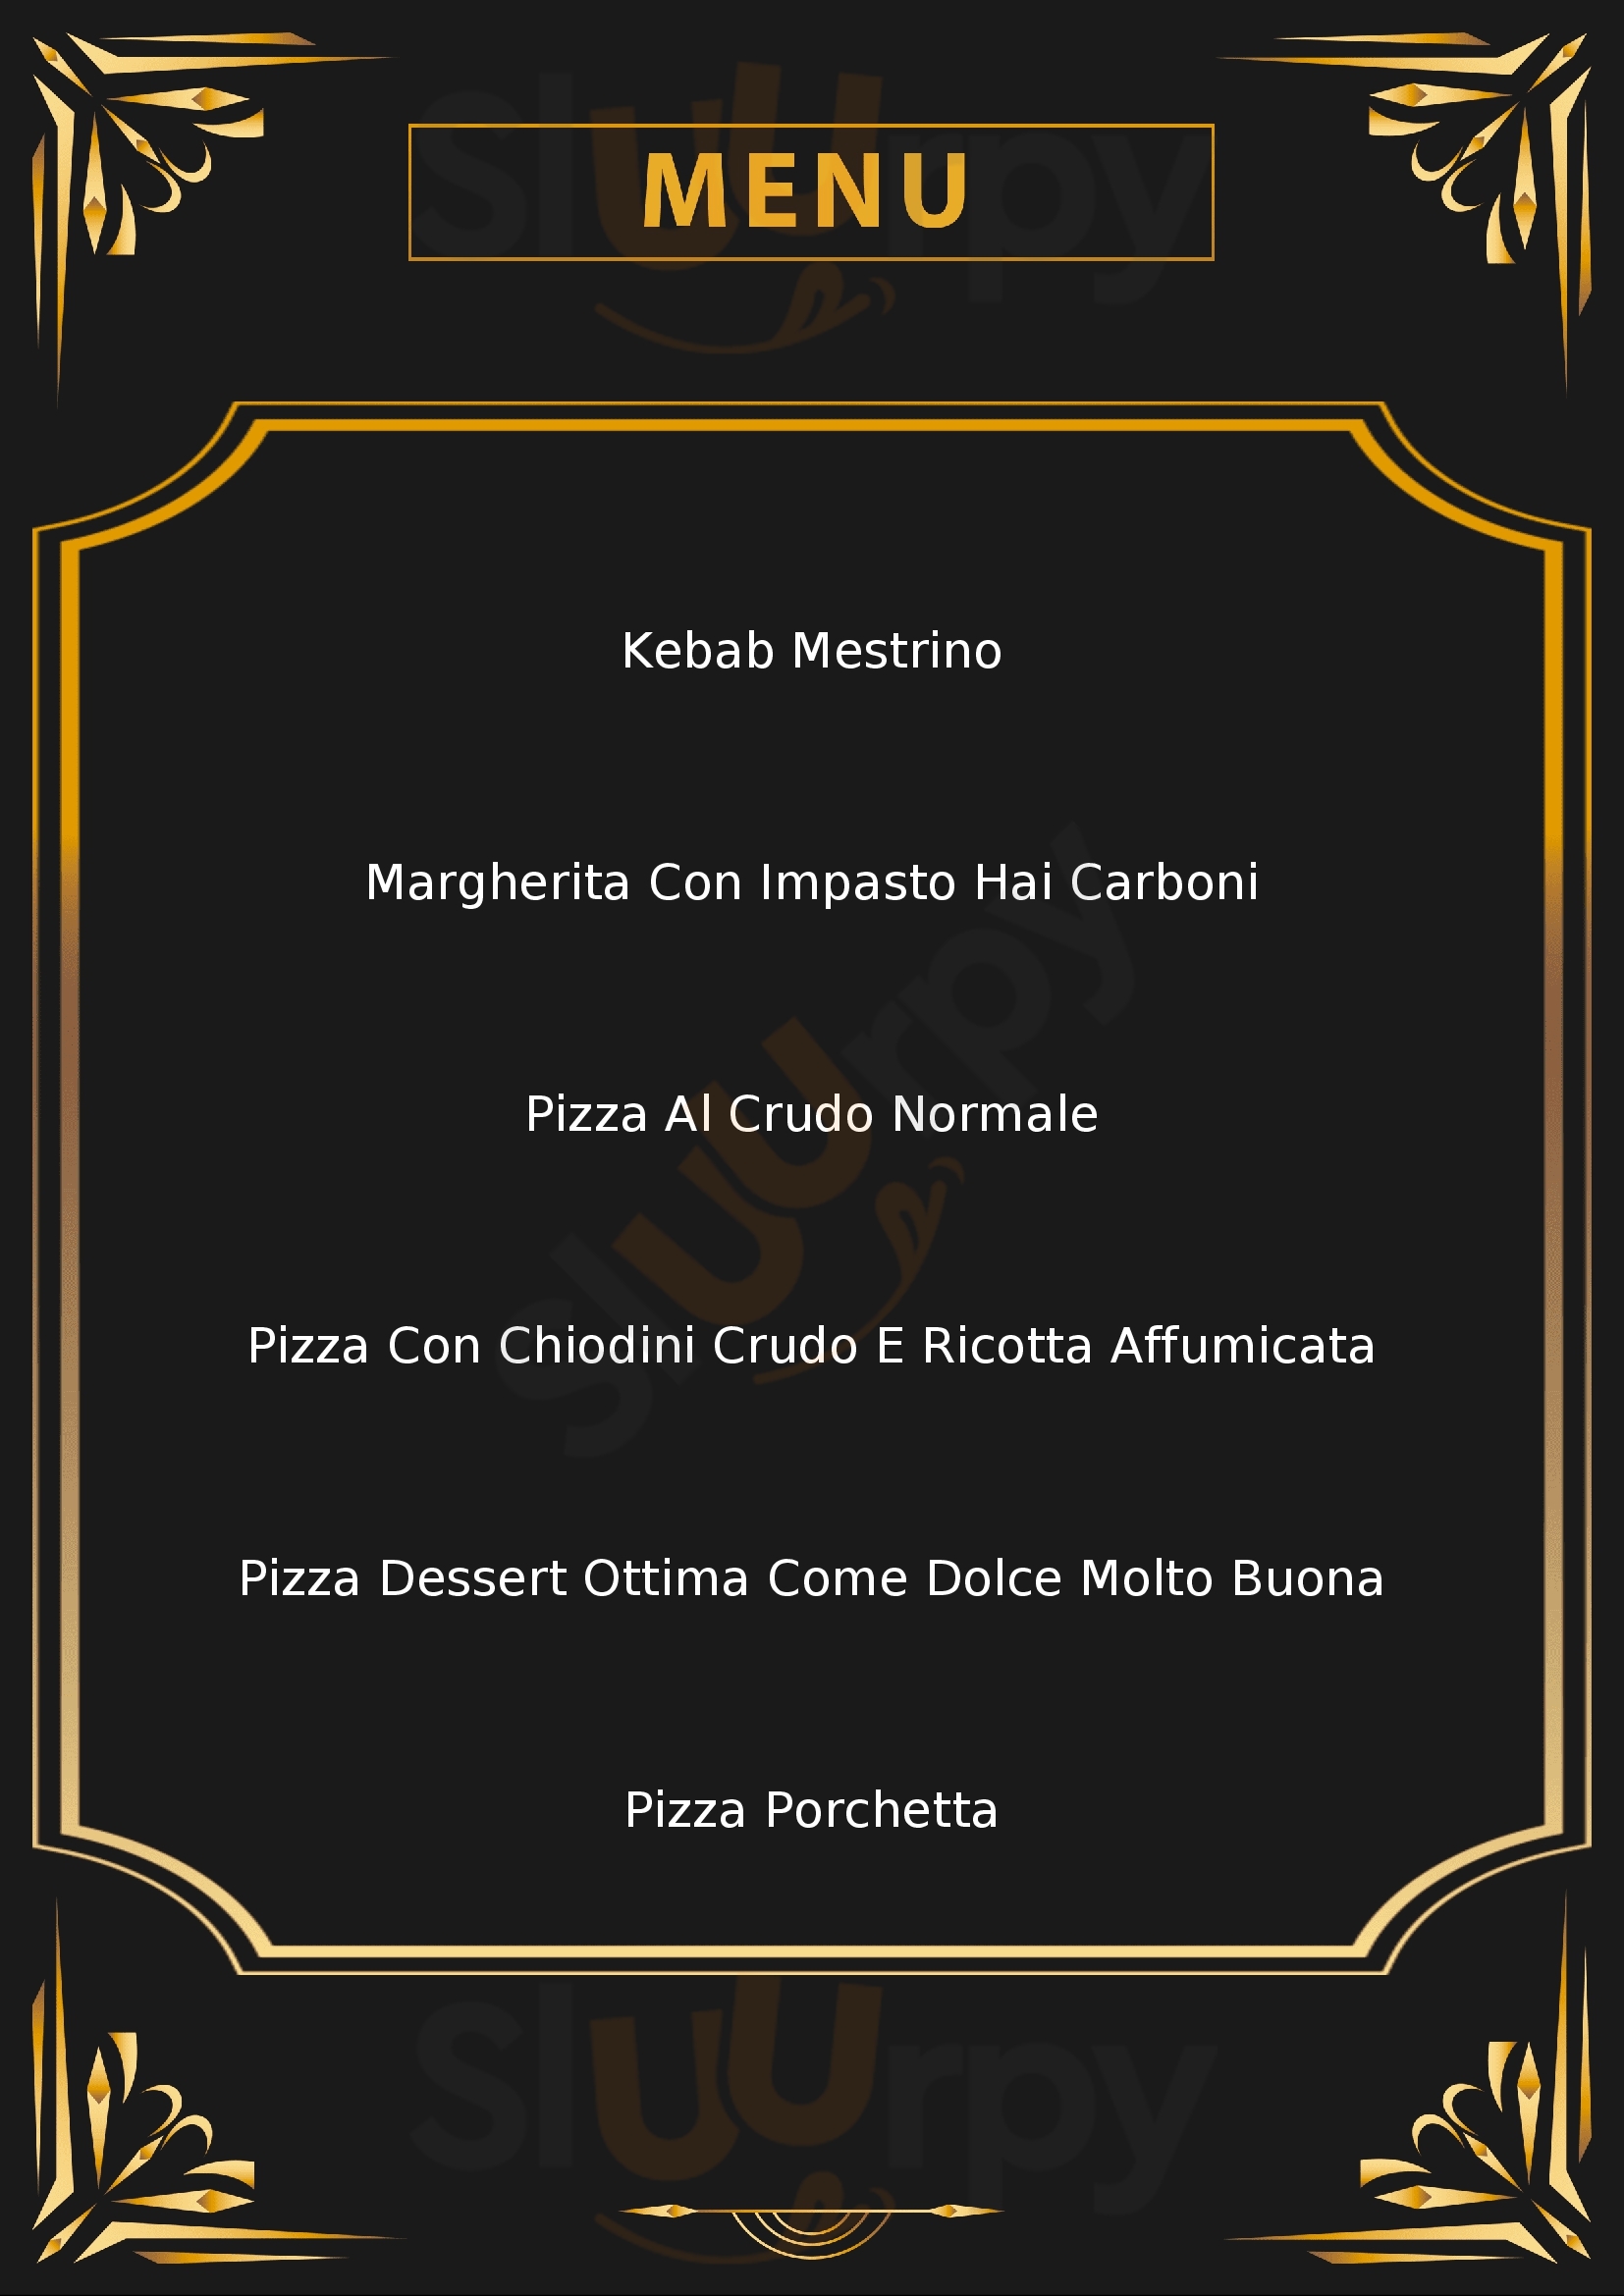 Ristorante Pizzeria San Rocco Motta di Livenza menù 1 pagina